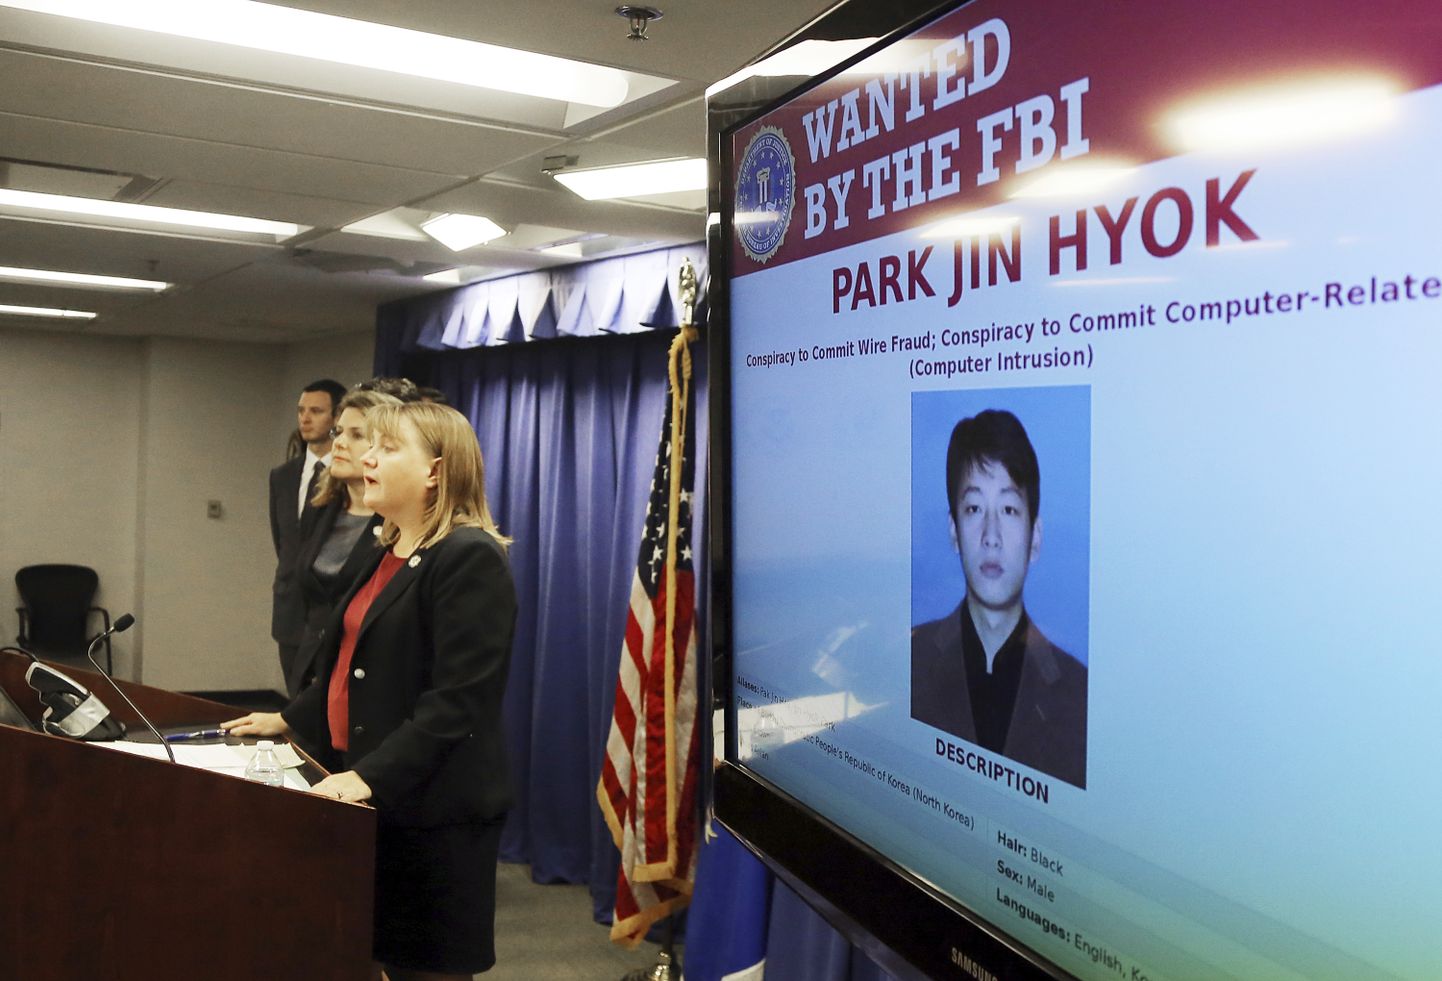 Üks kolmest süüdistatavast on Park Jin Hyok